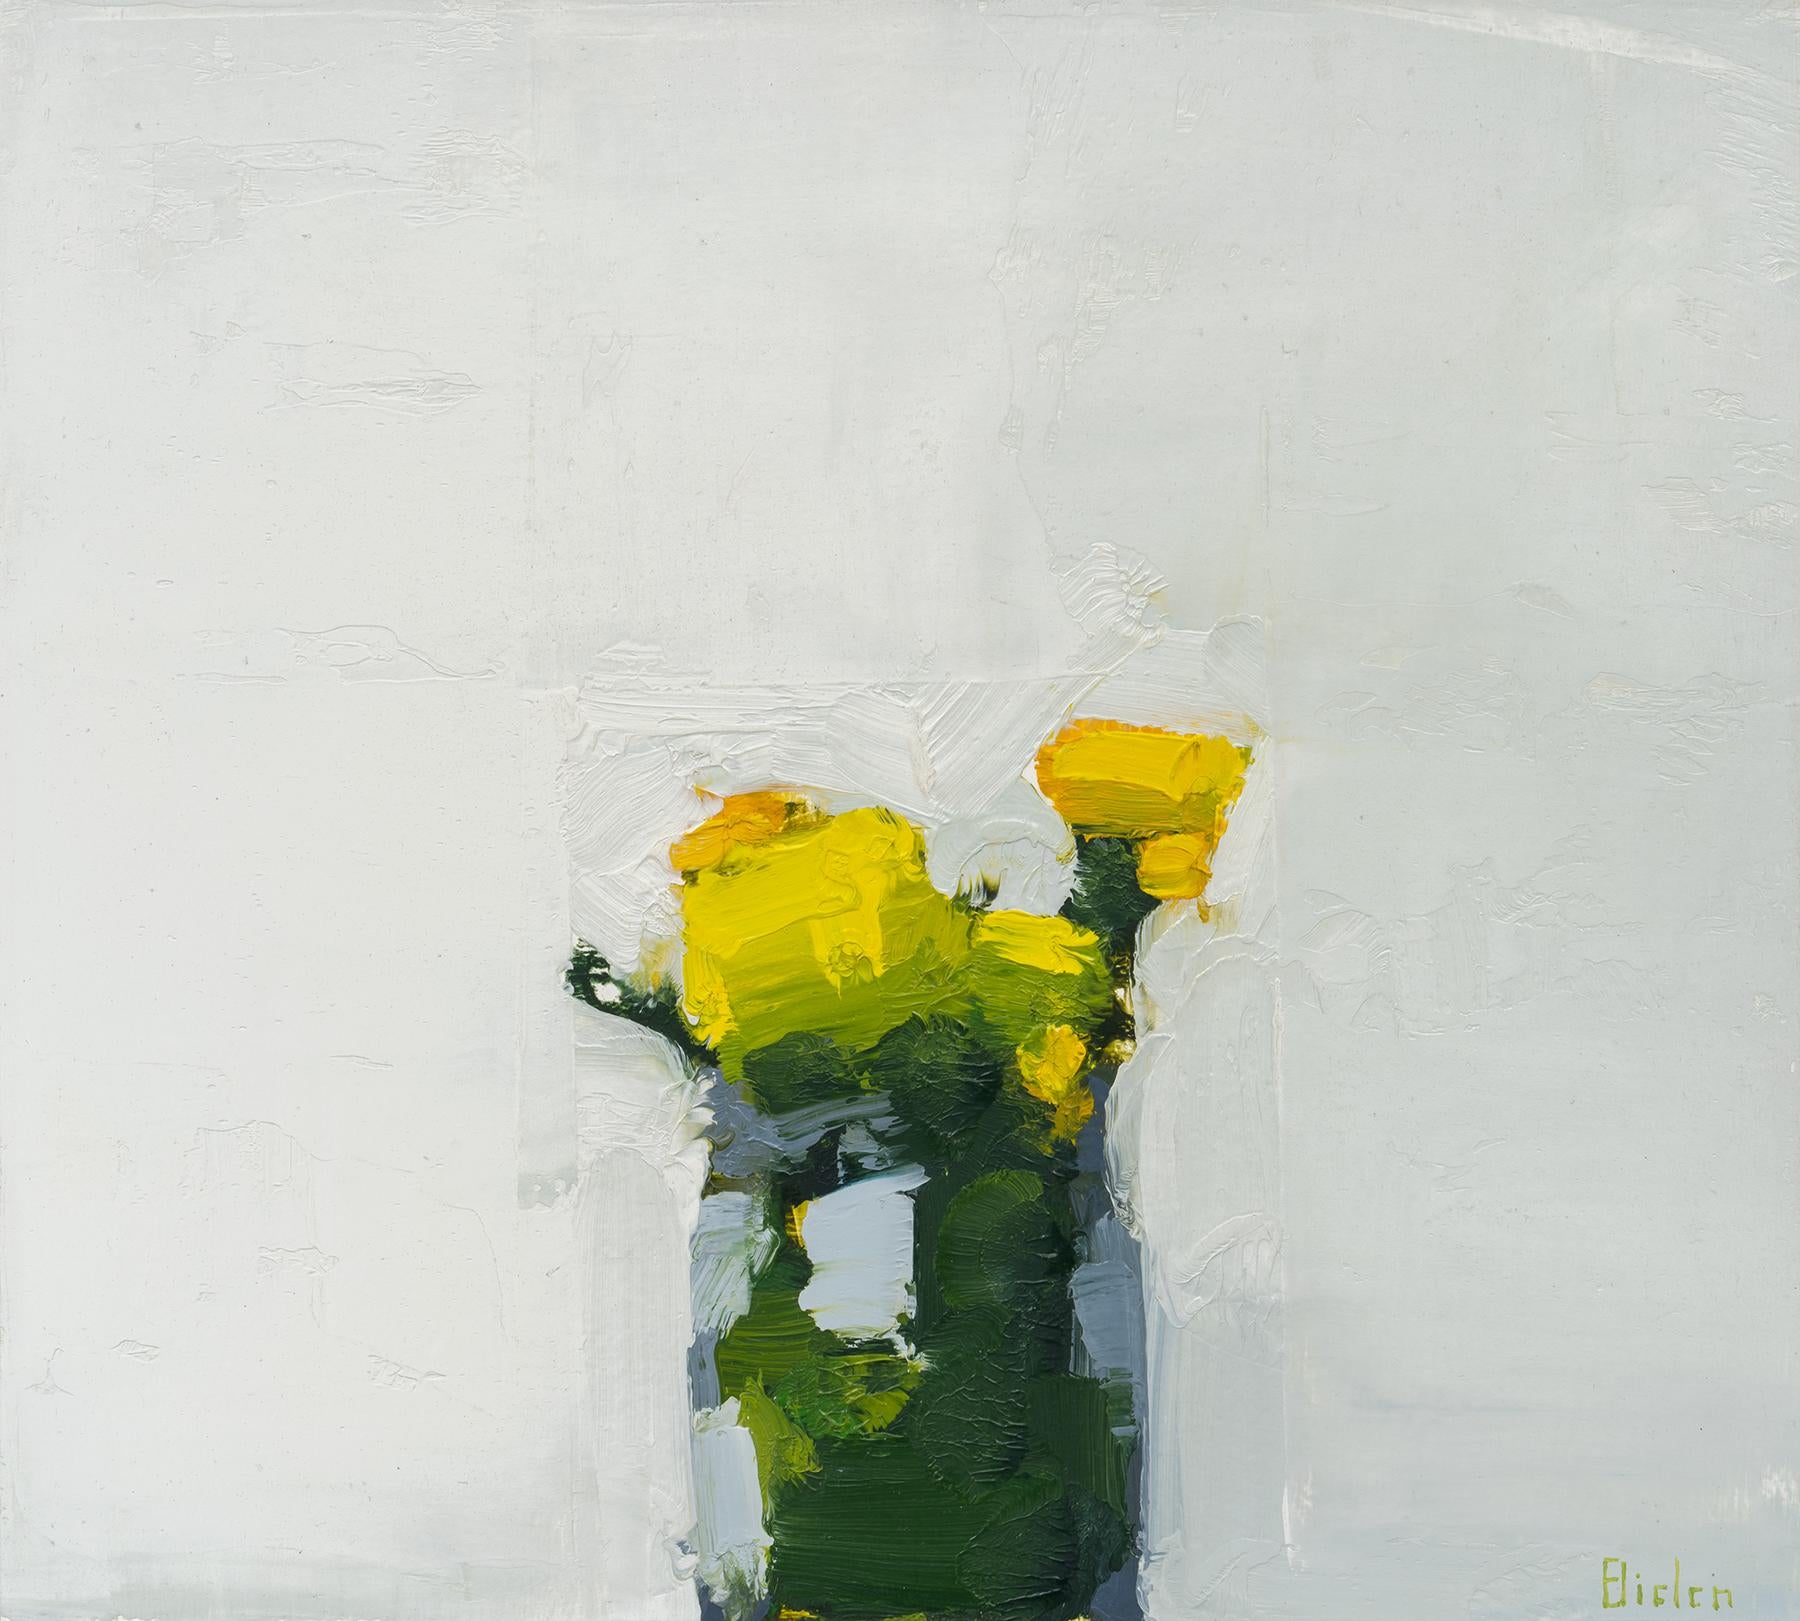 Stanley Bielen
Simple Virtue, 2022
huile sur papier/monté
9 x 10 in.
taille de l'encadrement : 16 x 17 in.
(bie048)

Cette magnifique peinture à l'huile de Stanley Bielen représente des fleurs jaunes dans un vase dans un style impressionniste et